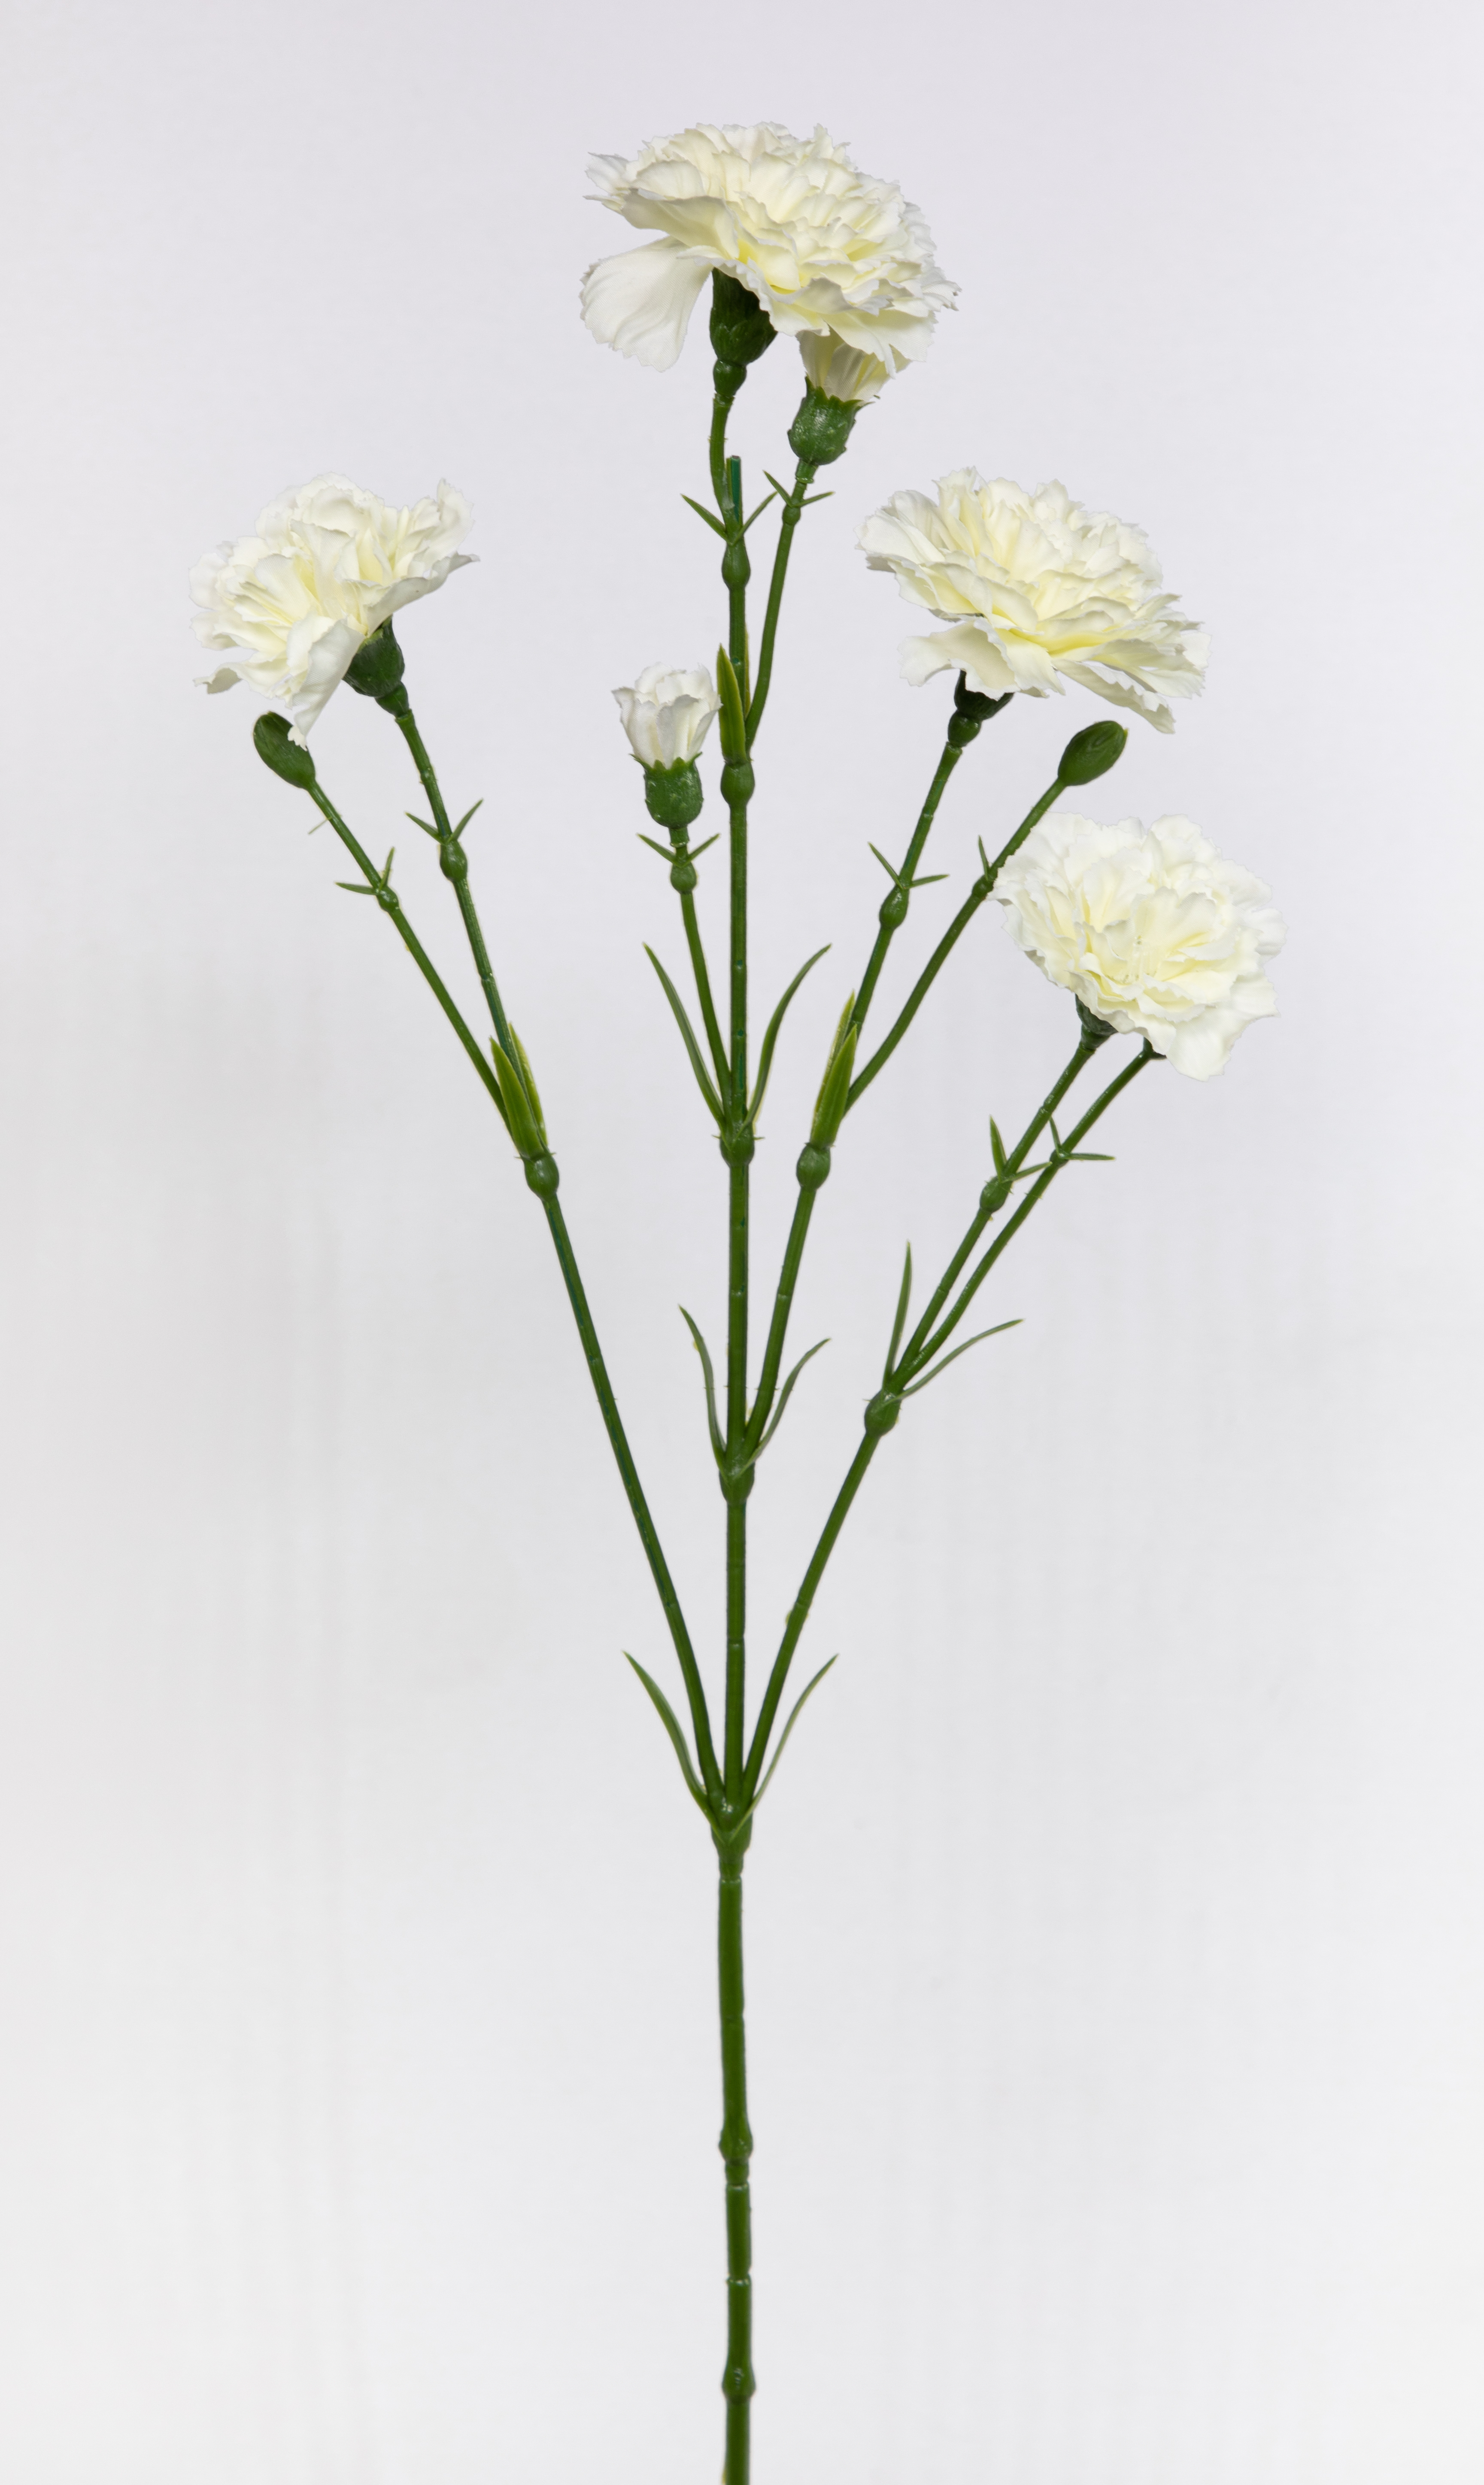 Nelkenzweig 62cm weiß mit 6 Blüten FT Kunstblumen künstliche Nelken Trossnelken Dianthus Blume